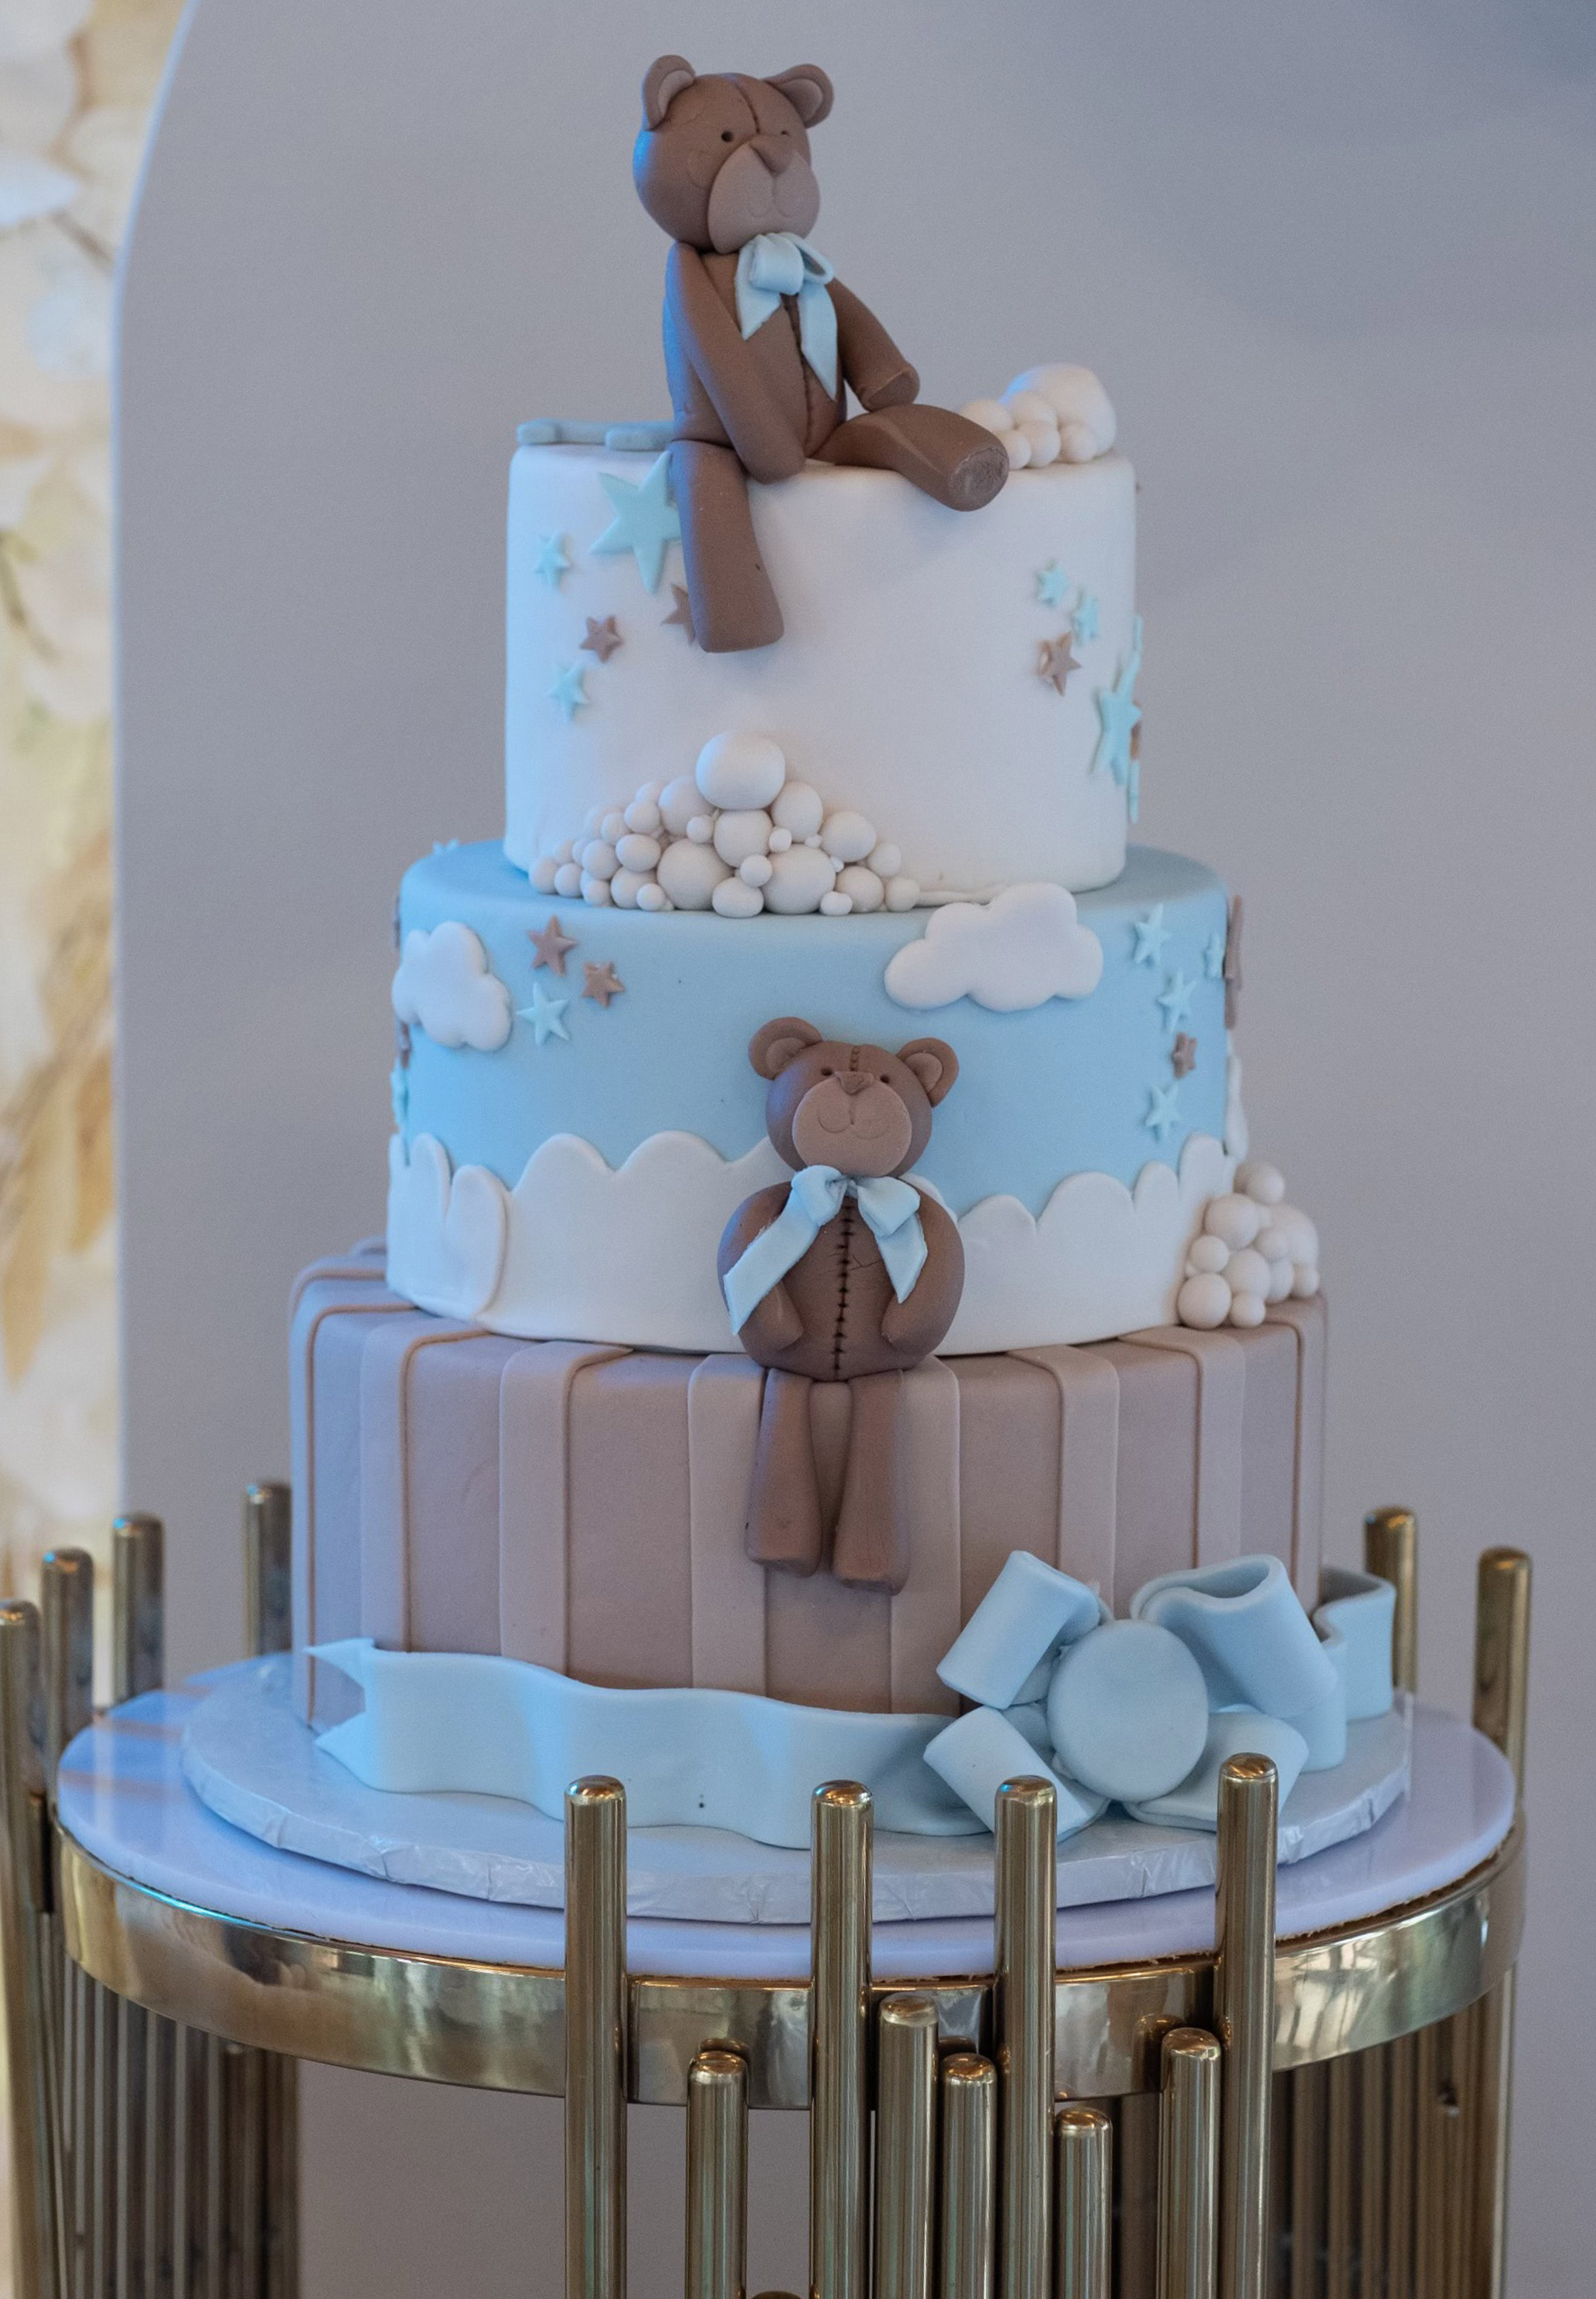 Teddy Bear Design Cake